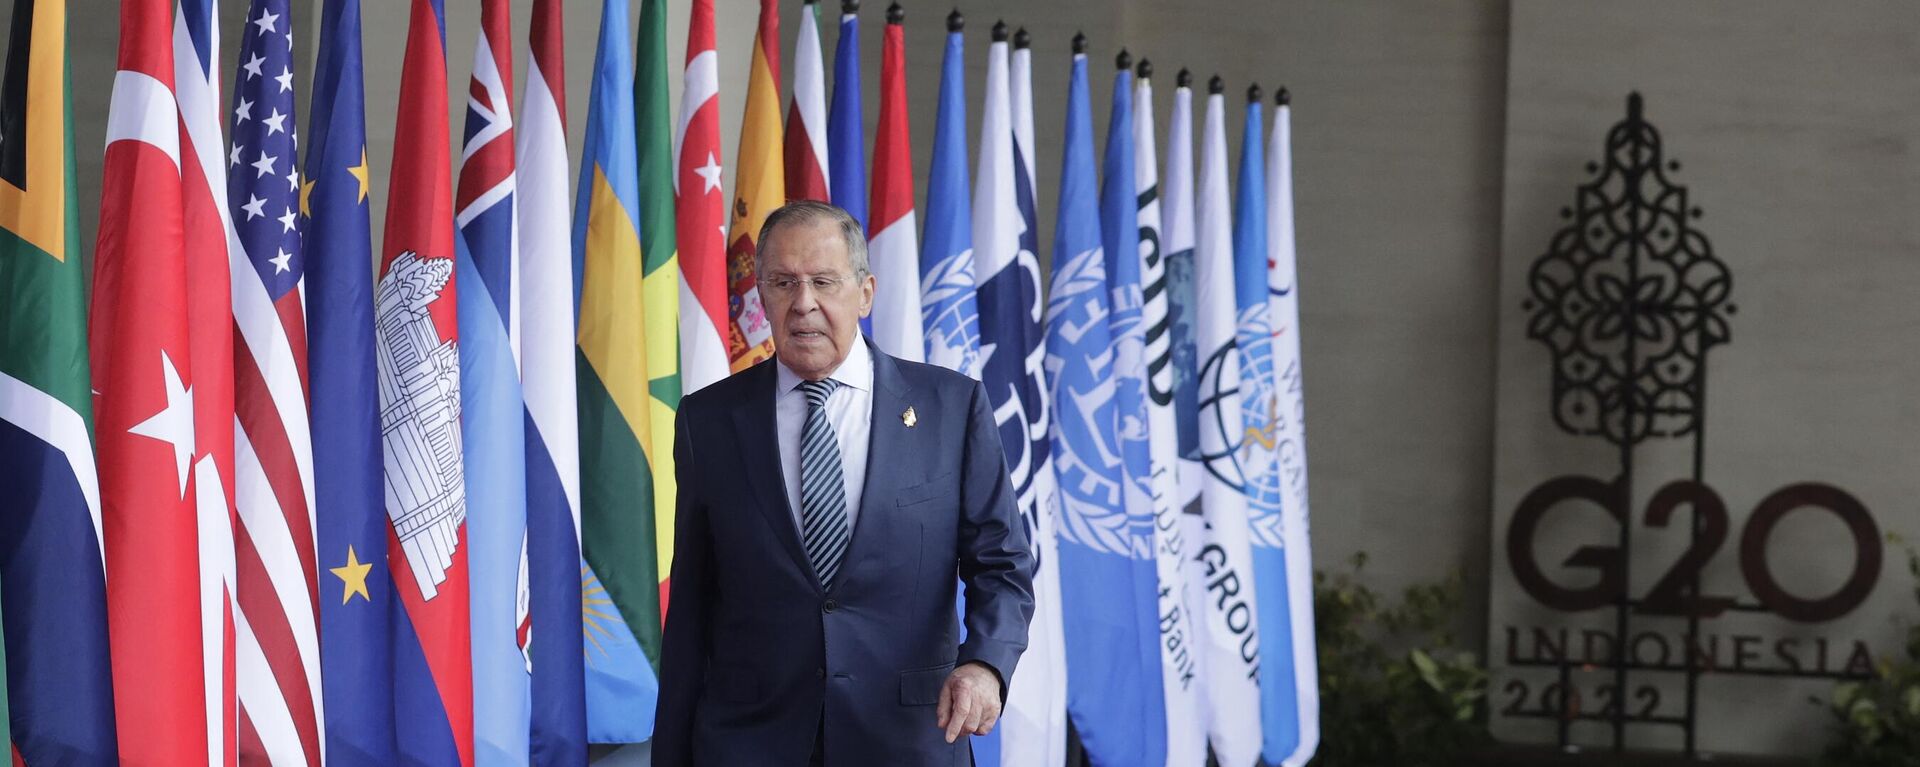 El ministro de Asuntos Exteriores de Rusia, Serguéi Lavrov, llega a la cumbre de líderes del G20 en Bali, el 15 de noviembre de 2022 - Sputnik Mundo, 1920, 20.04.2023